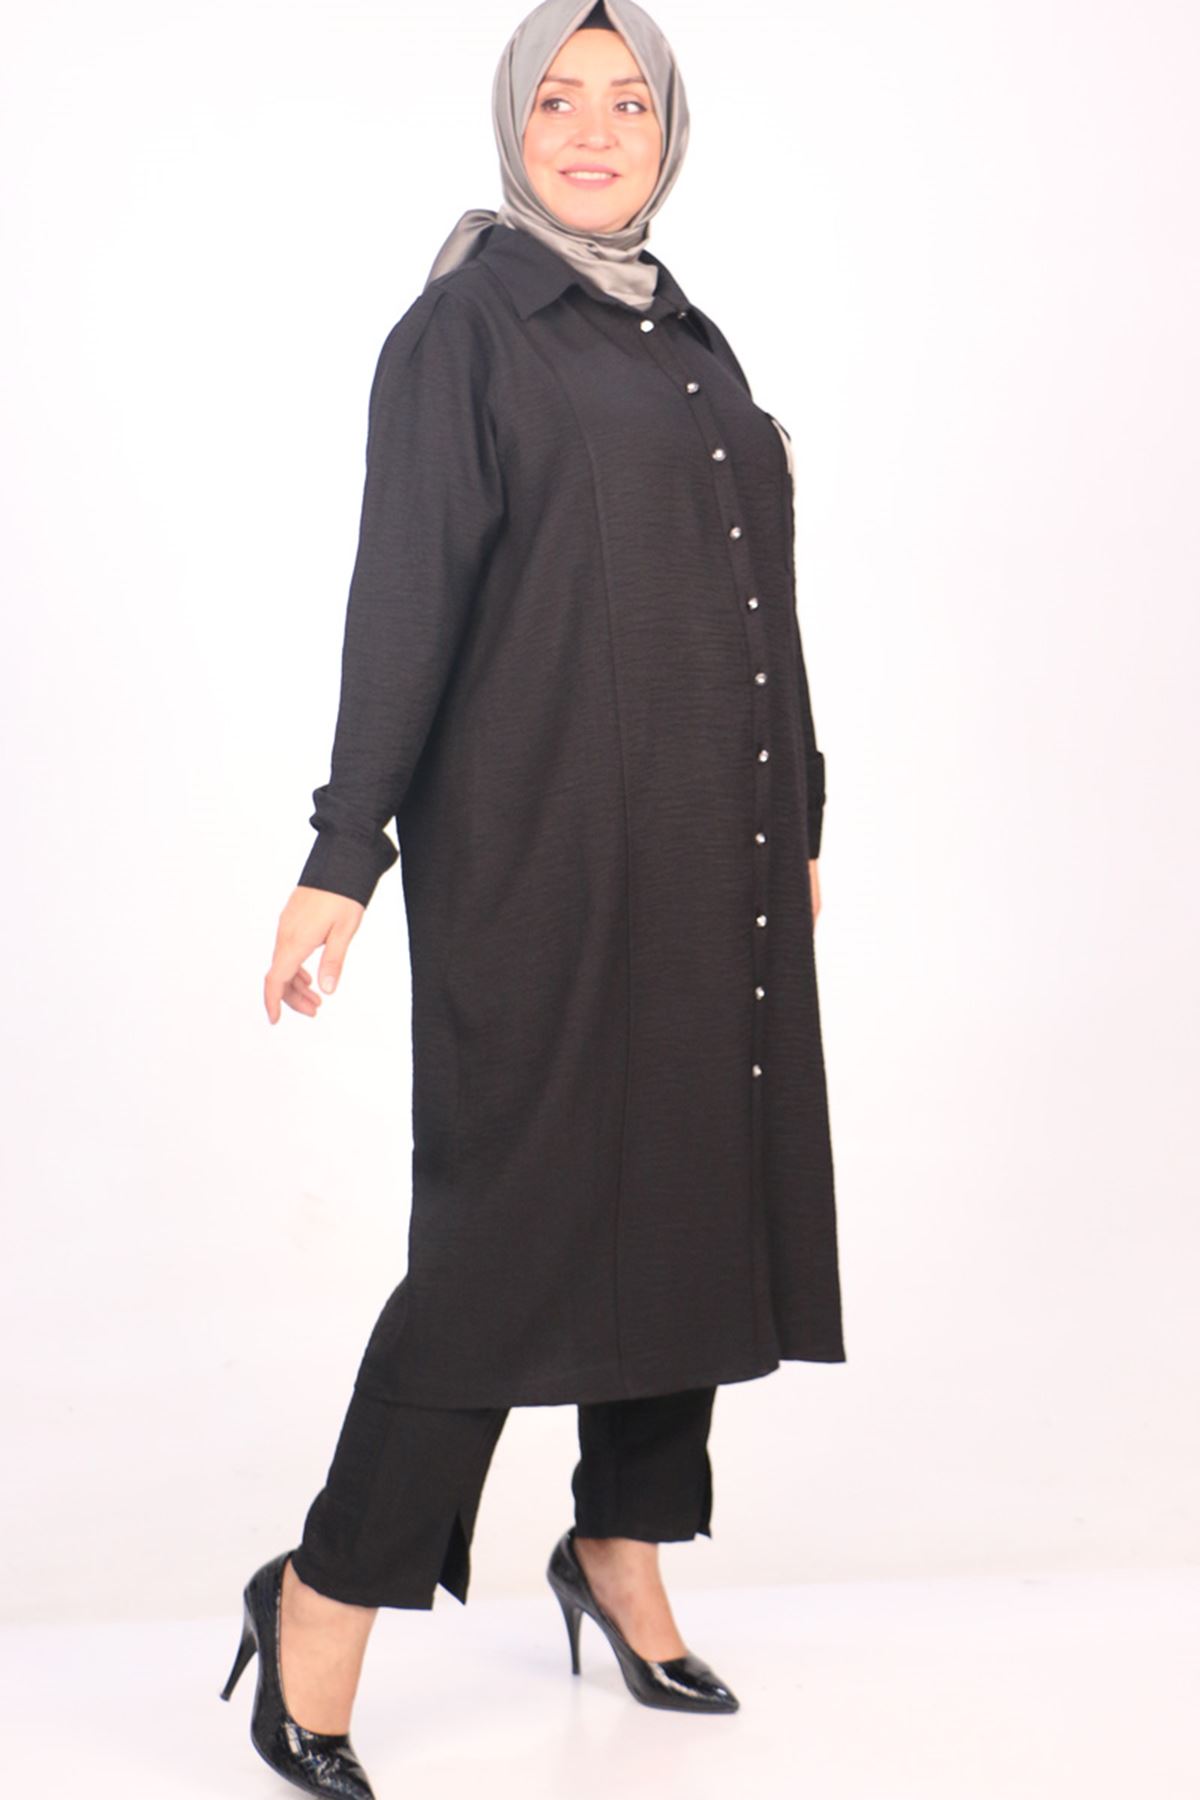 37038 Large Size Linen Airobin Button Detailed Trousers Suit -Black